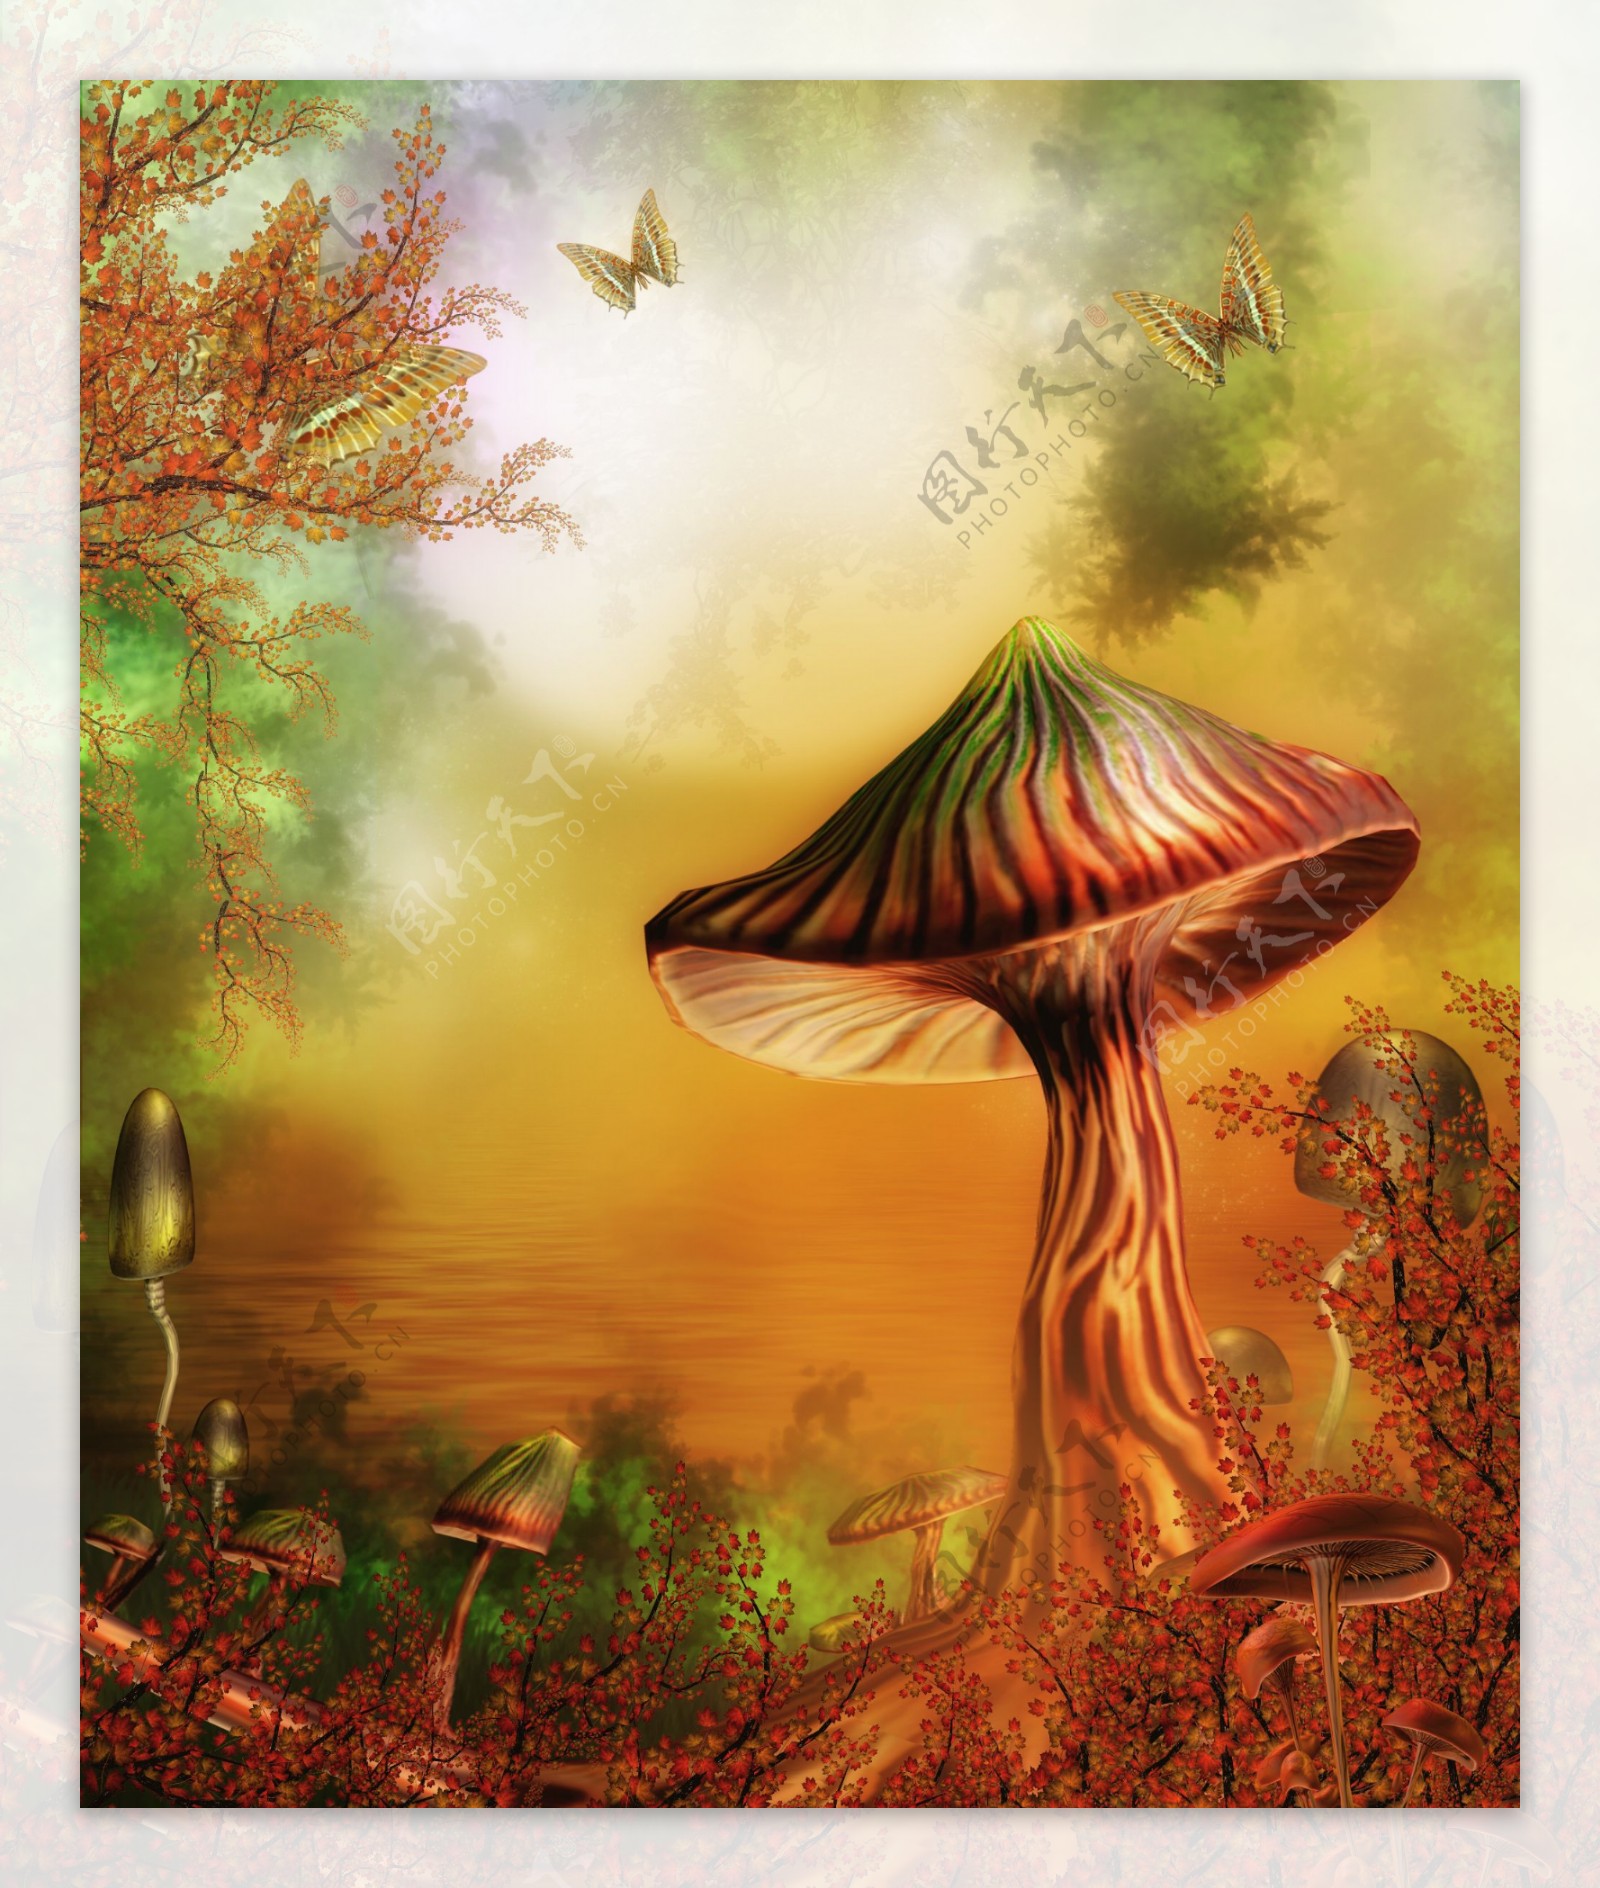 梦幻童话影楼背景蘑菇树蝴蝶红叶图片